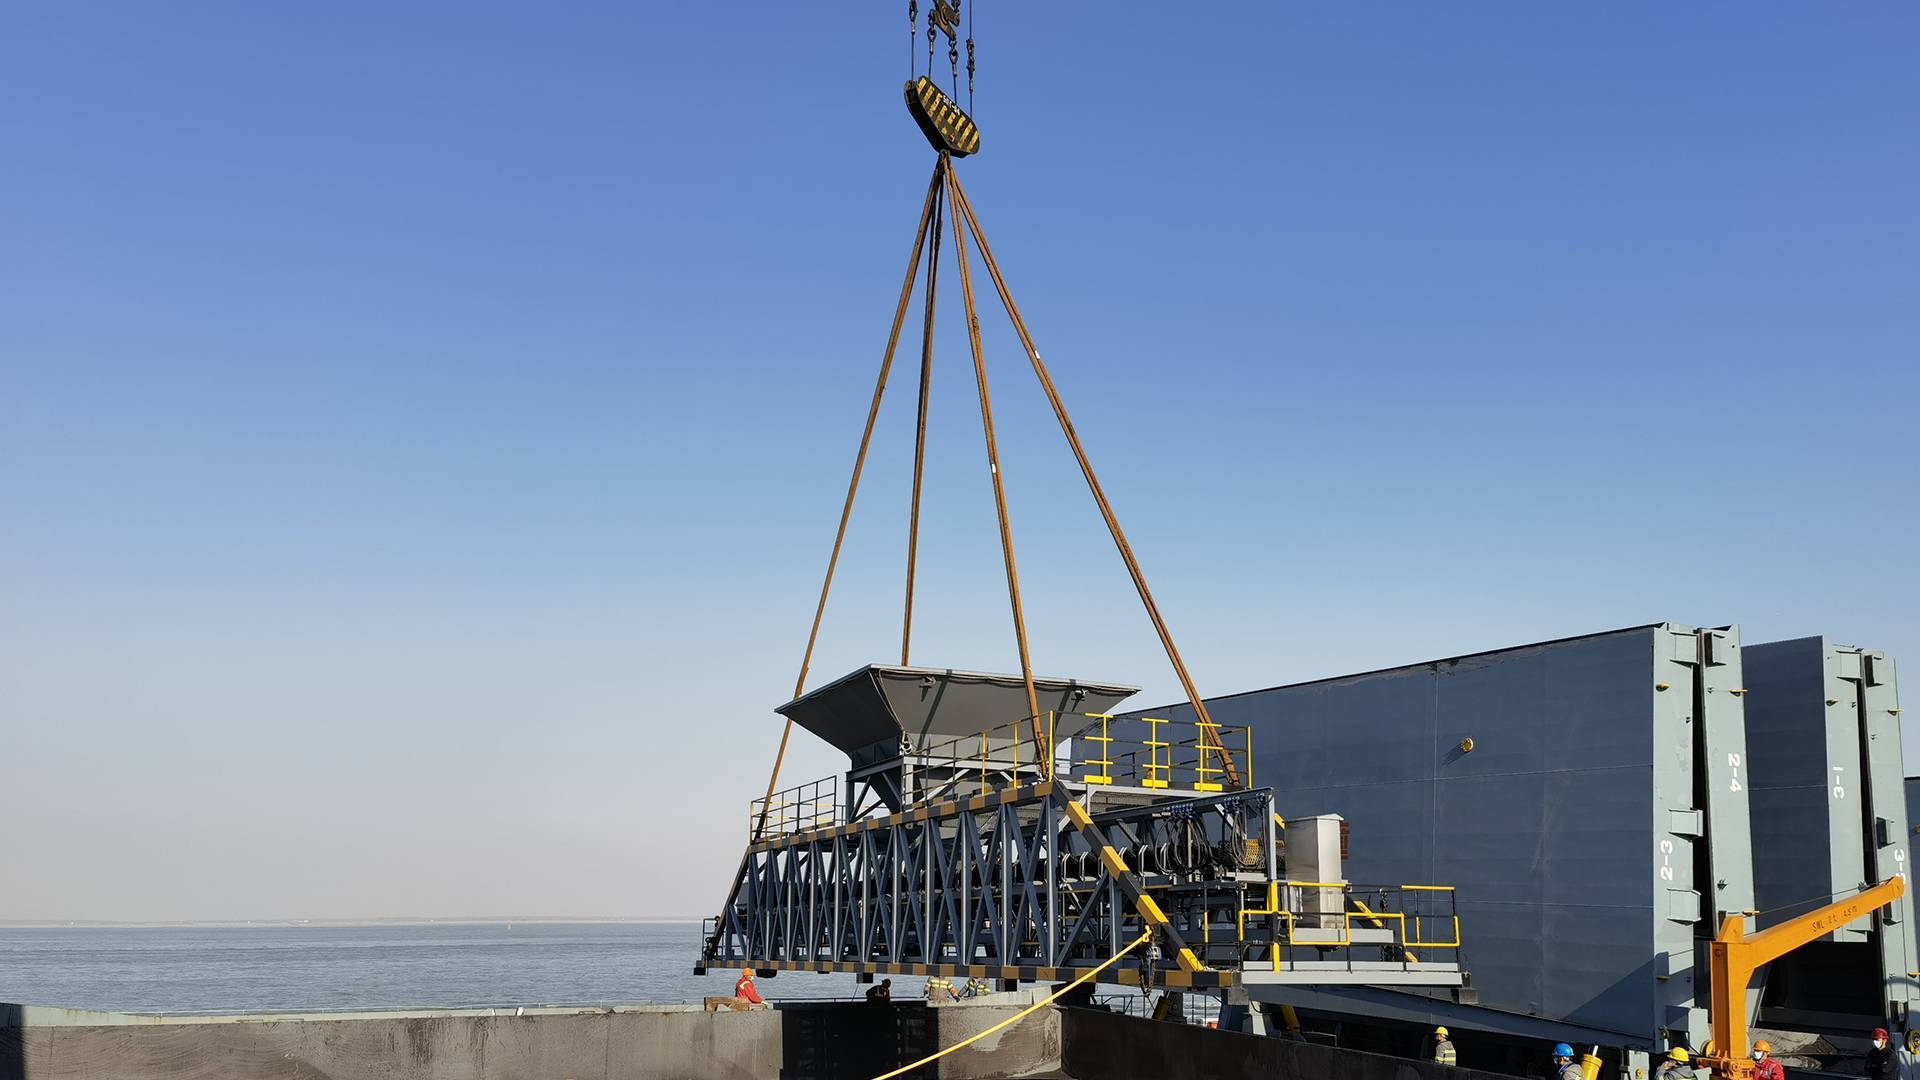 装船机电子皮带秤提升港口装卸精度与效率